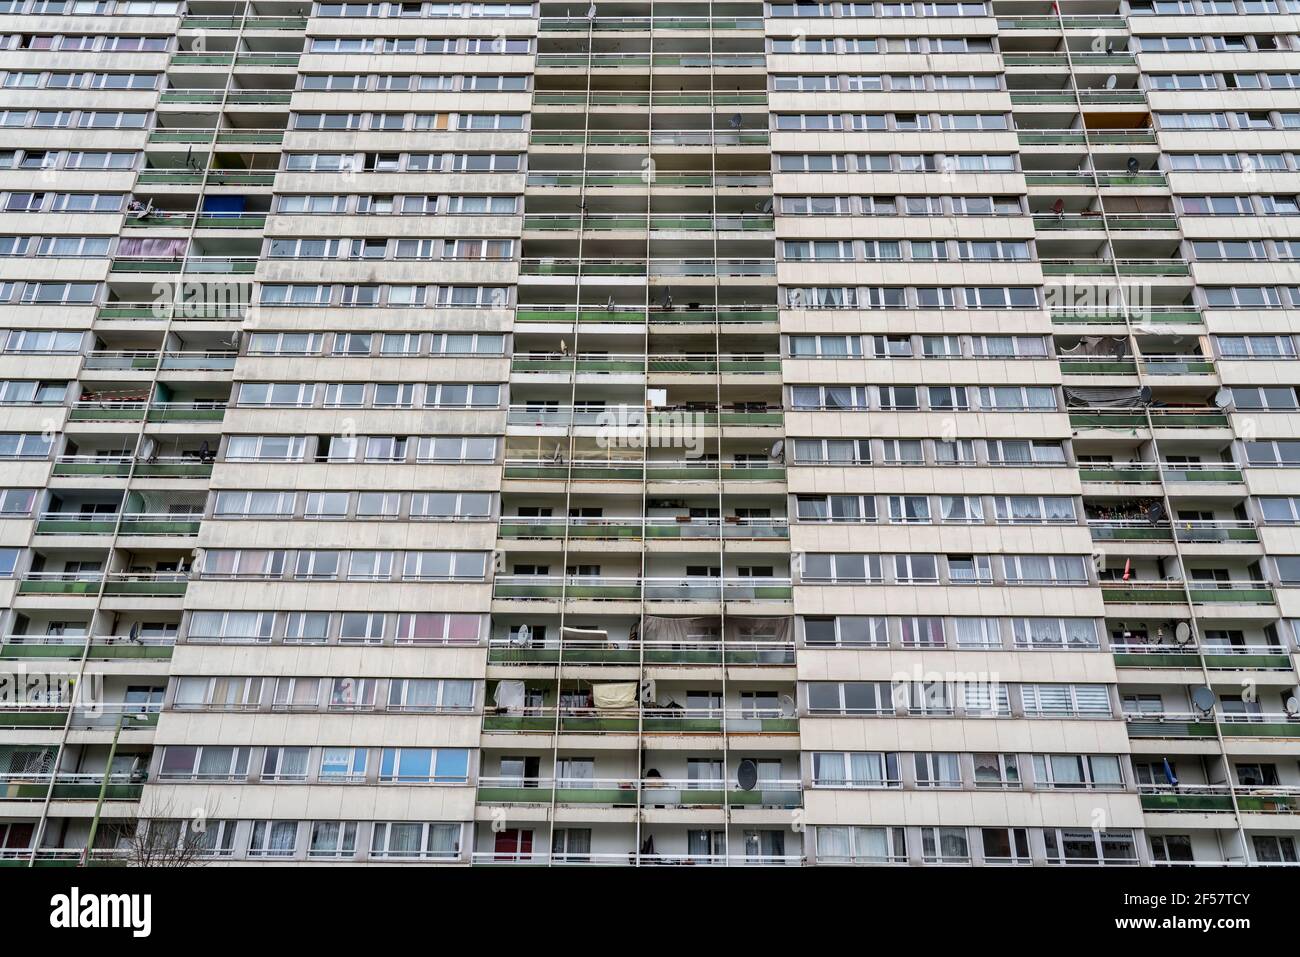 Duisburg-Hochheide, grande tenuta residenziale Wohnpark Hochheide, 6 alti edifici a 20 piani con oltre 1440 appartamenti, a partire dagli anni '70, un alto edificio Foto Stock